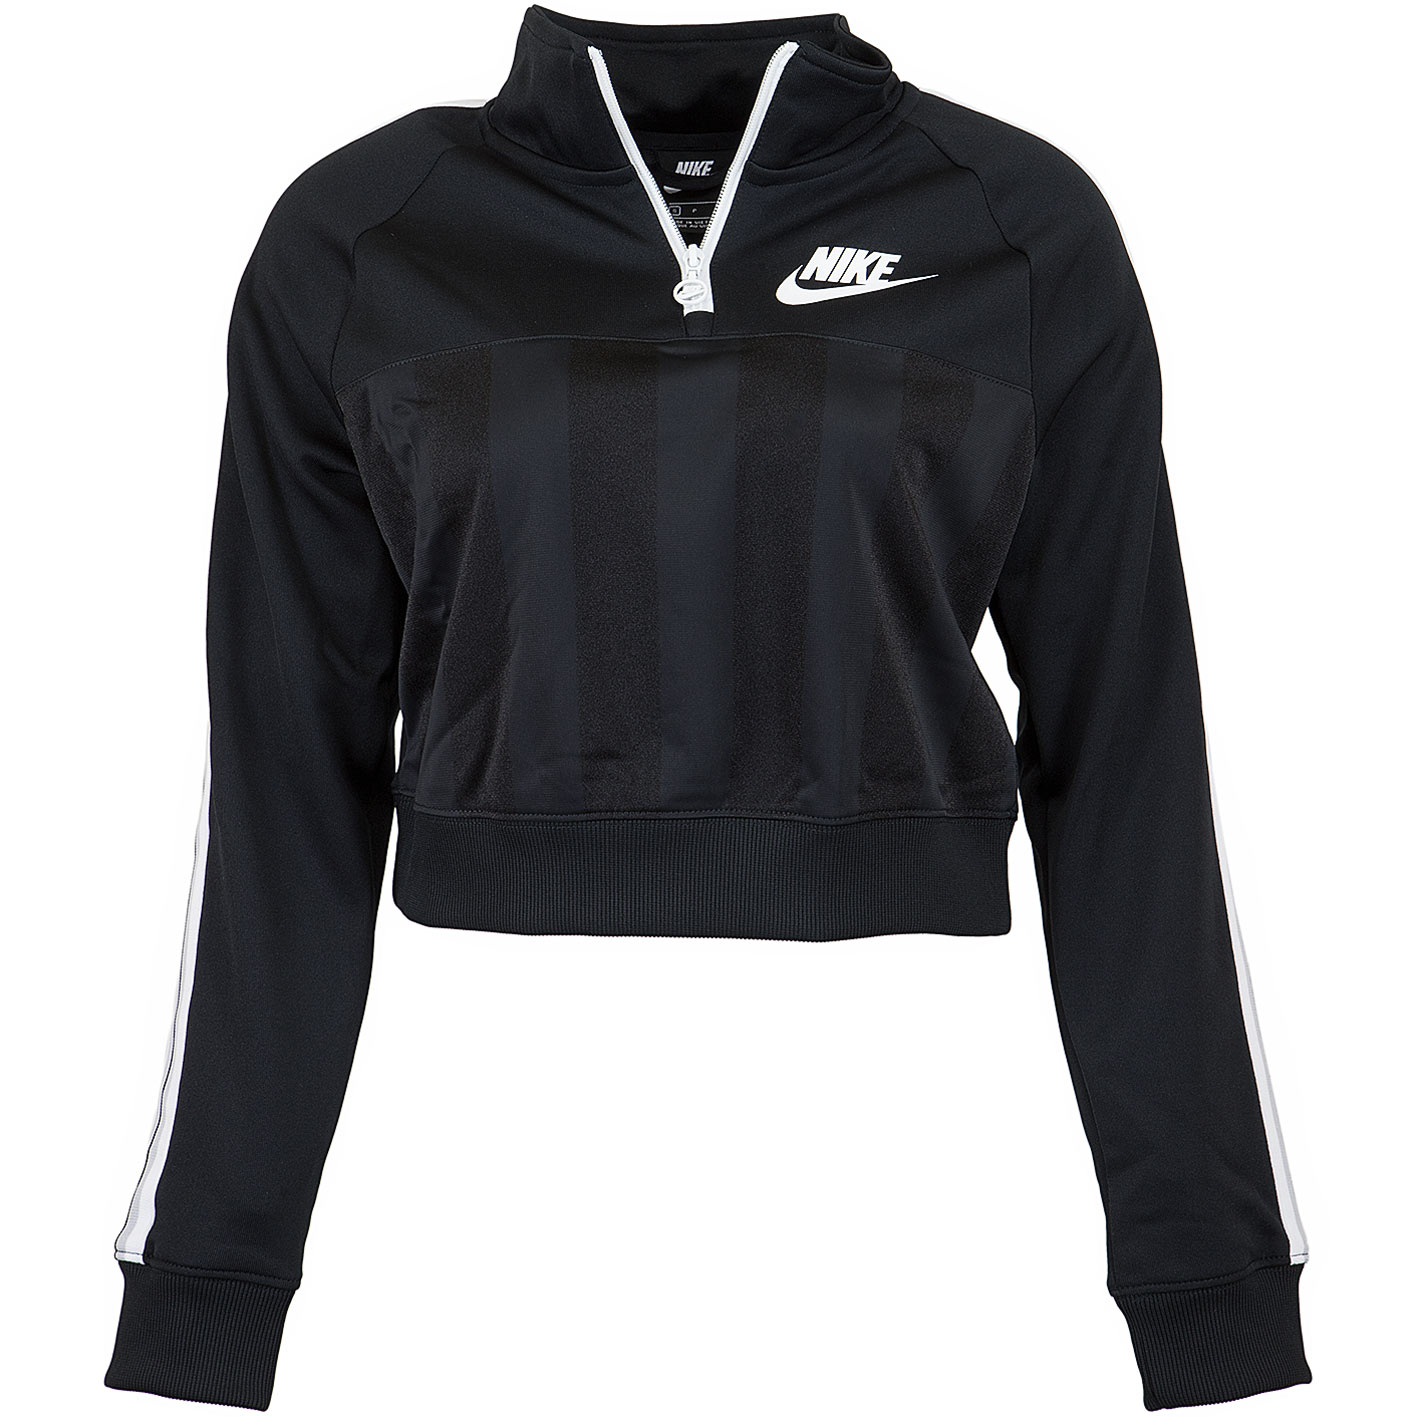 ☆ Nike Damen Trainingsjacke Shadow Stripe HZ schwarz/weiß - hier bestellen!